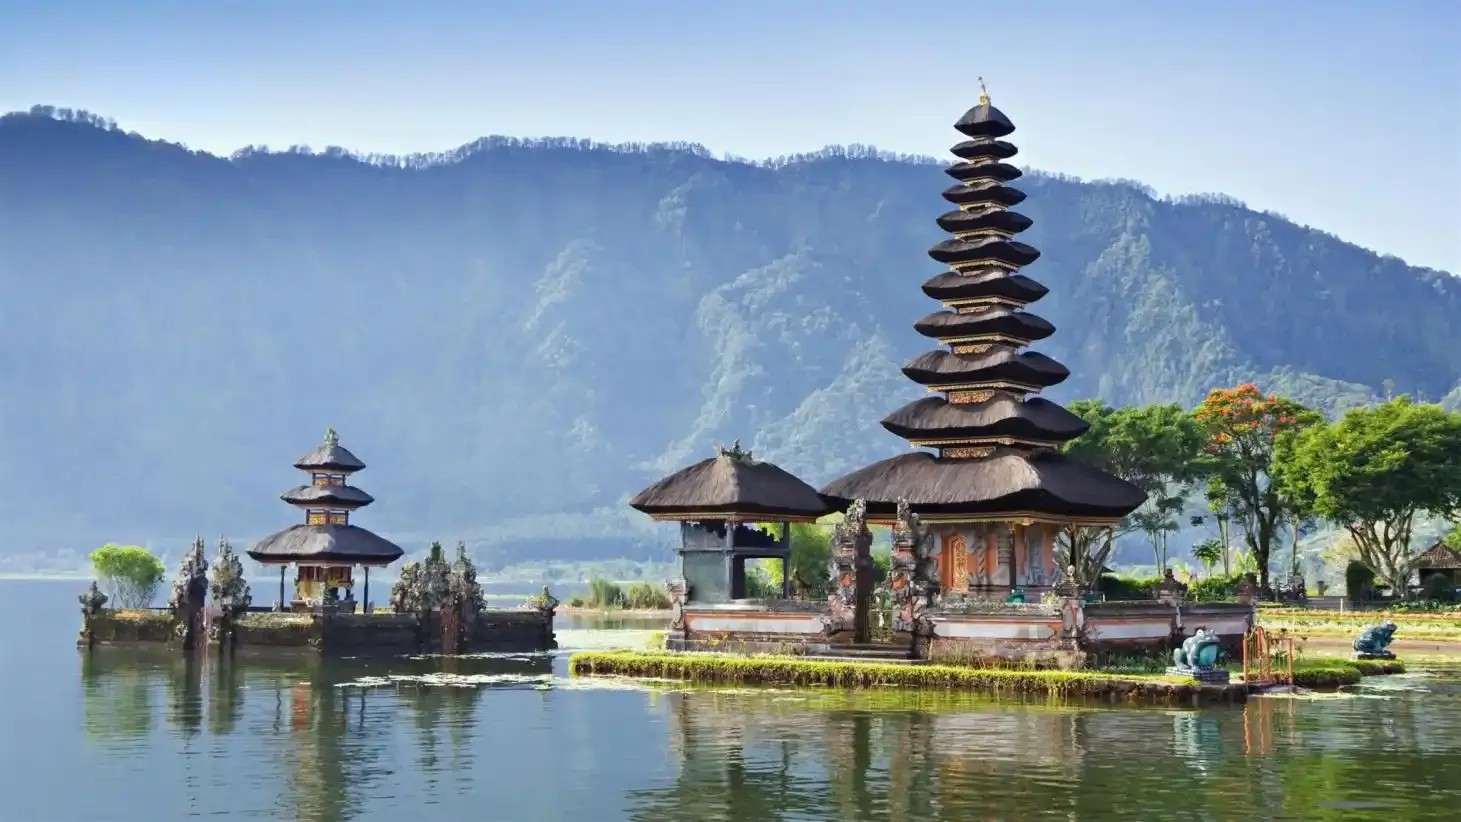  Ulun Danu Temple Bali, Indonesia